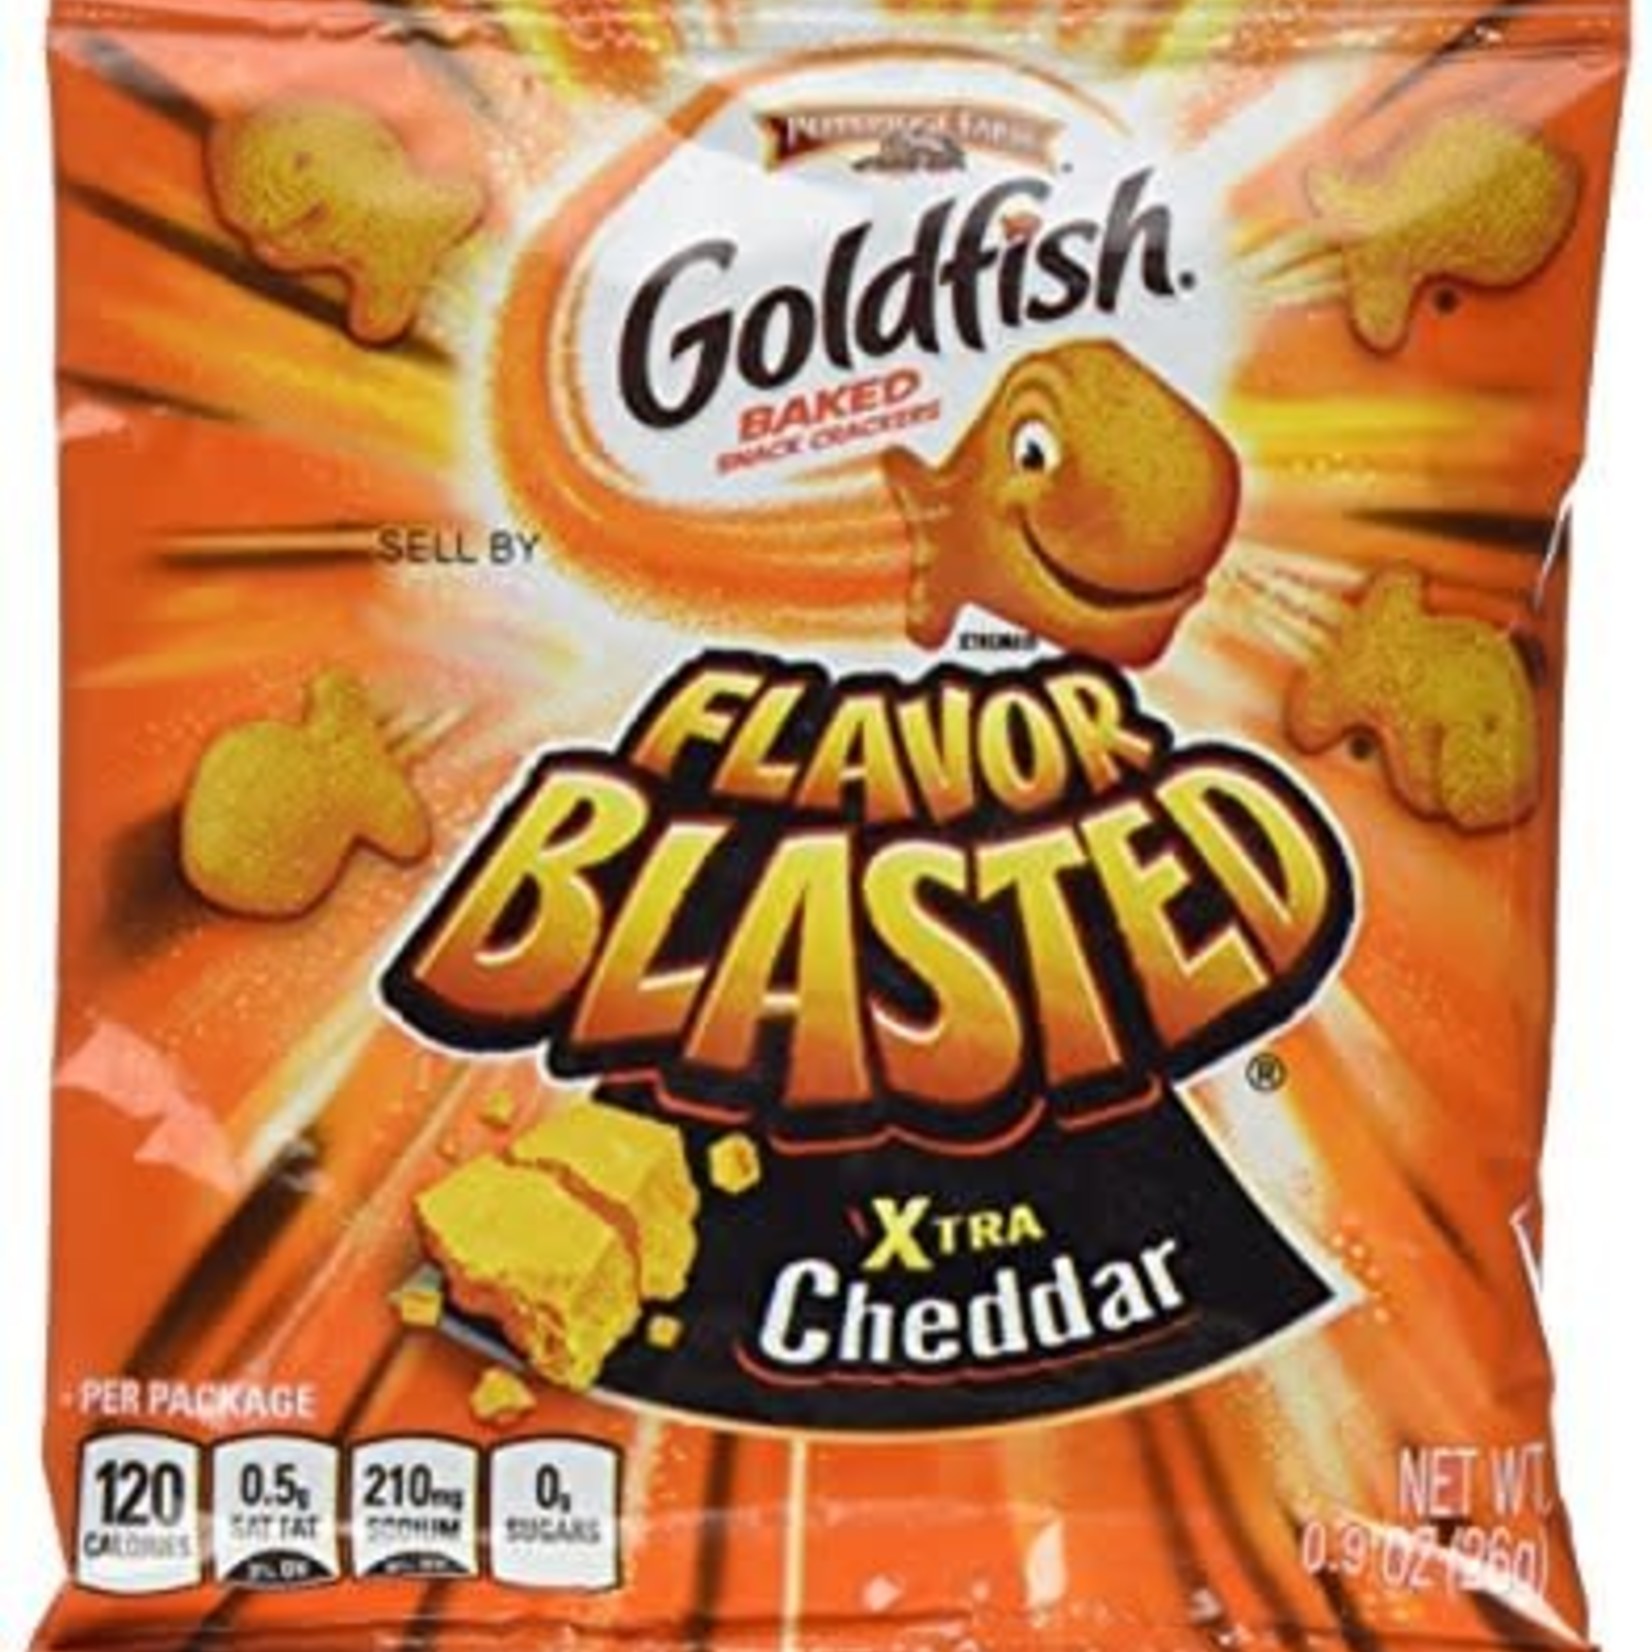 Goldfish Crackers Goldfish Baked Xtra Cheddar